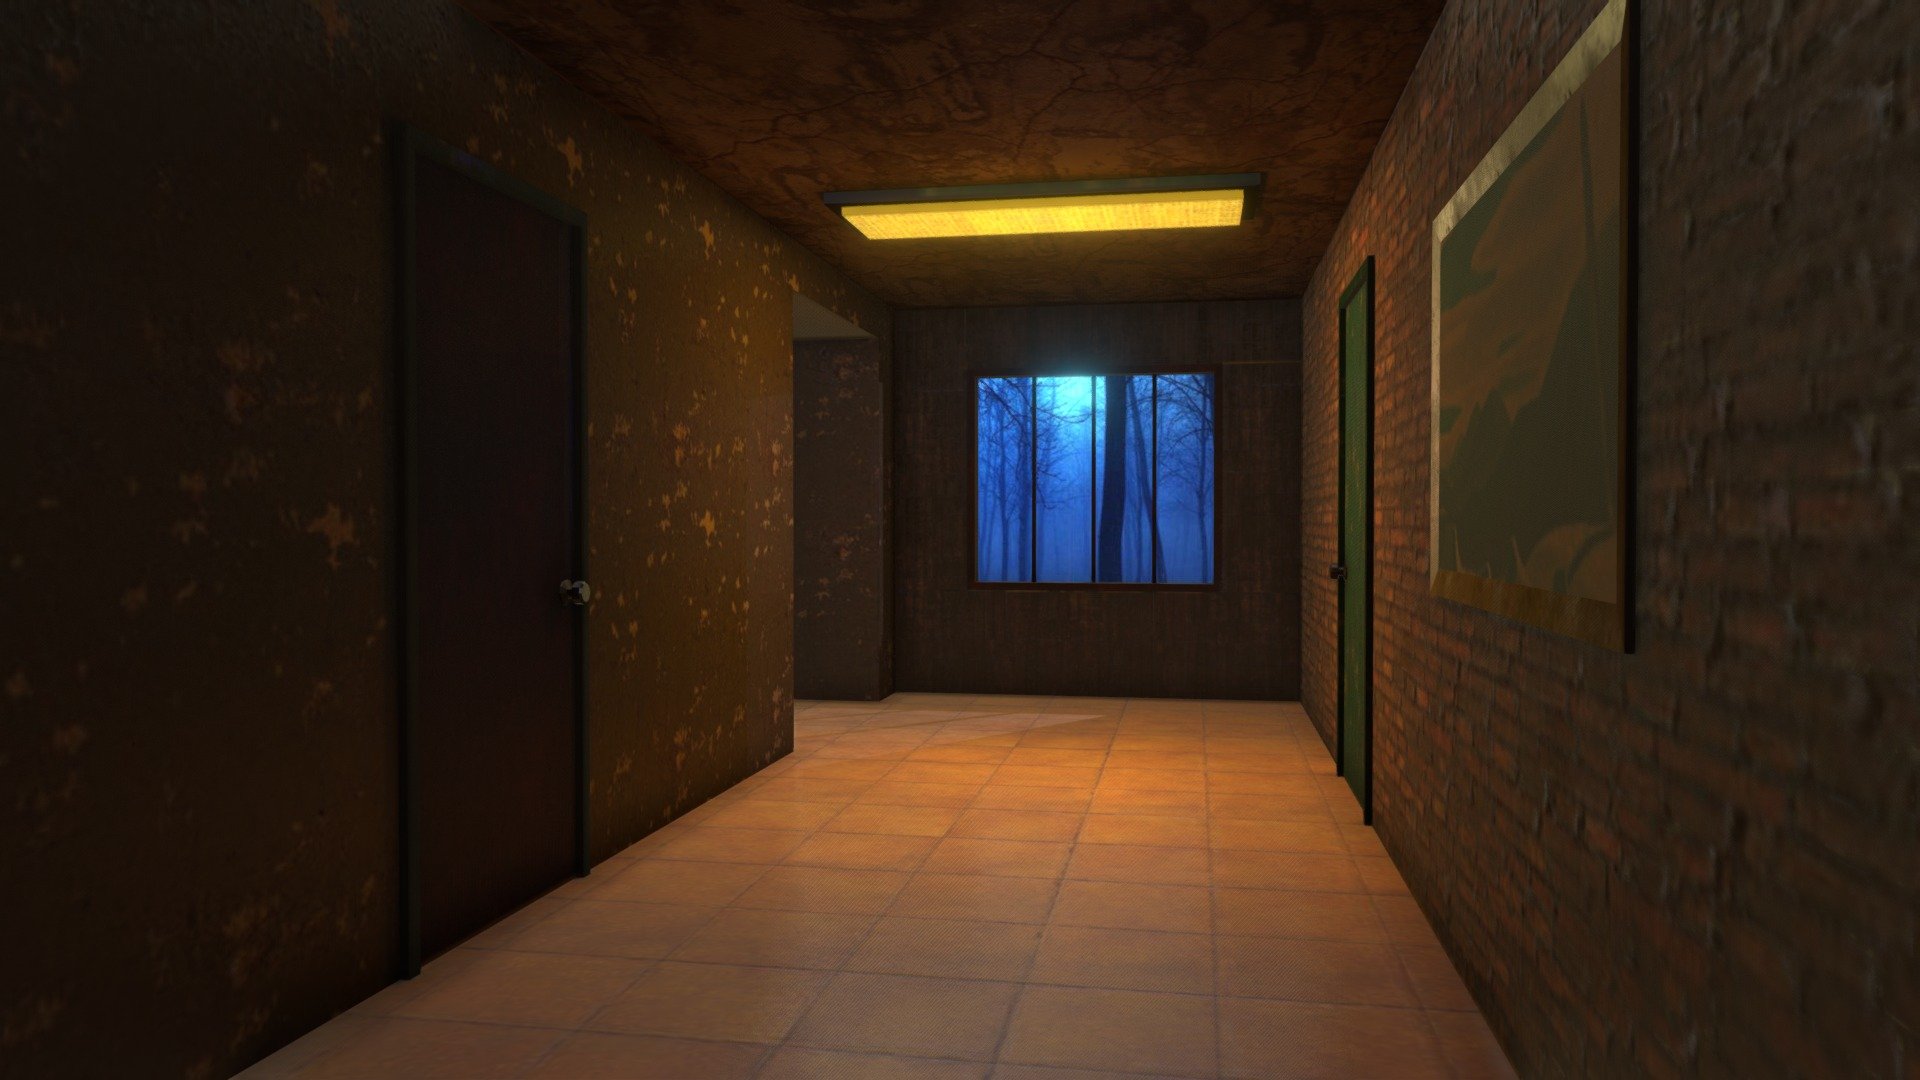 Dark Hallway
Textures baked in Blender - Dark Hallway - Buy Royalty Free 3D model by jimbogies 3d model